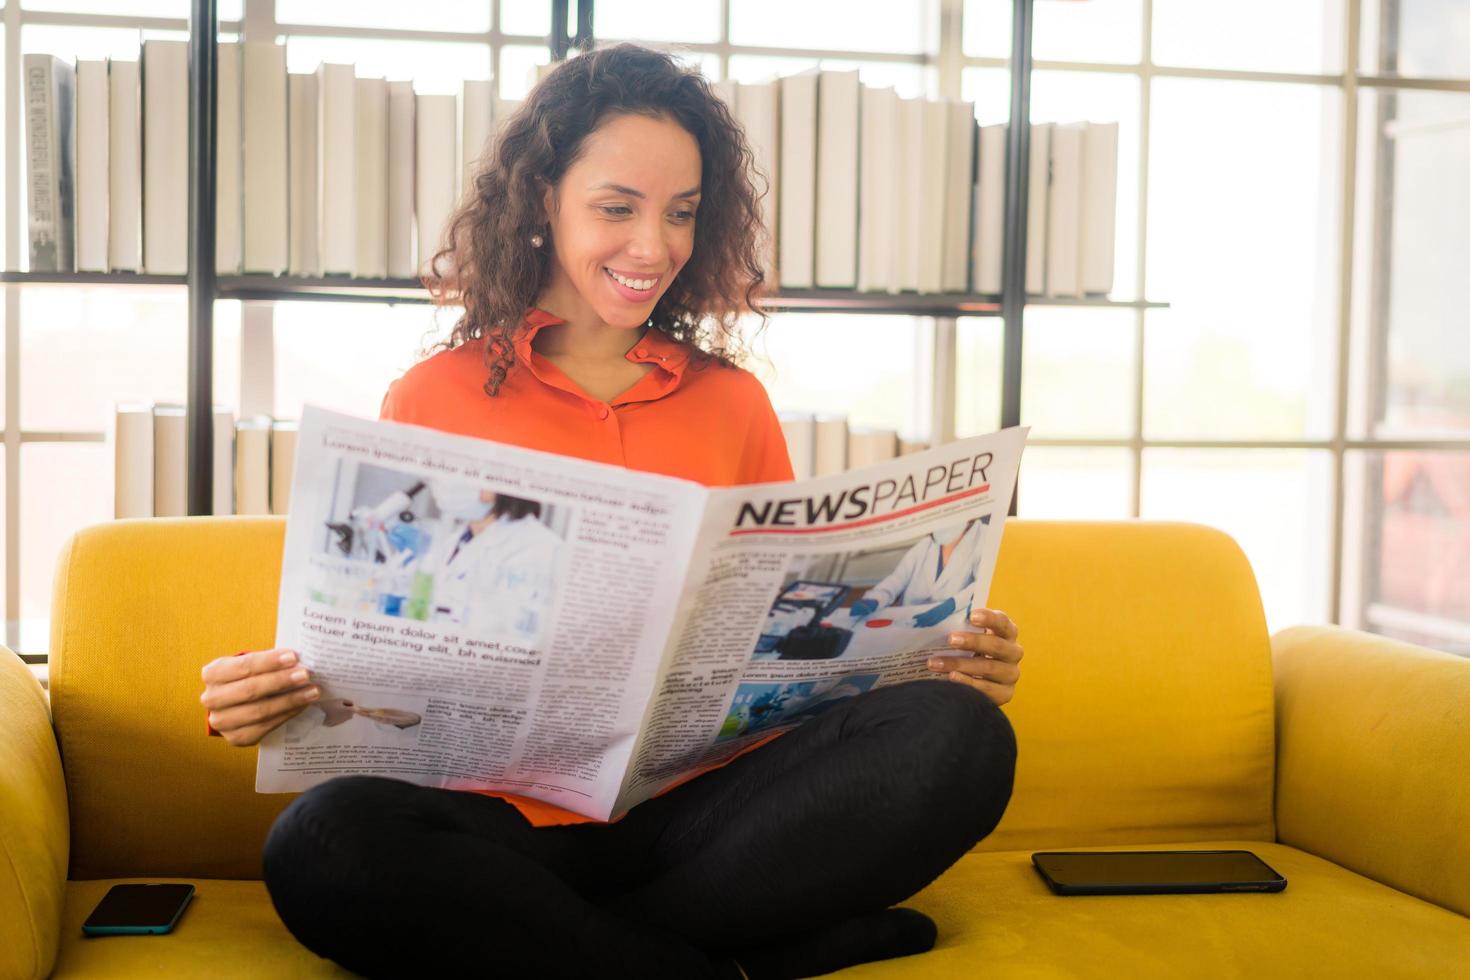 mulher da américa latina lendo jornal no sofá foto